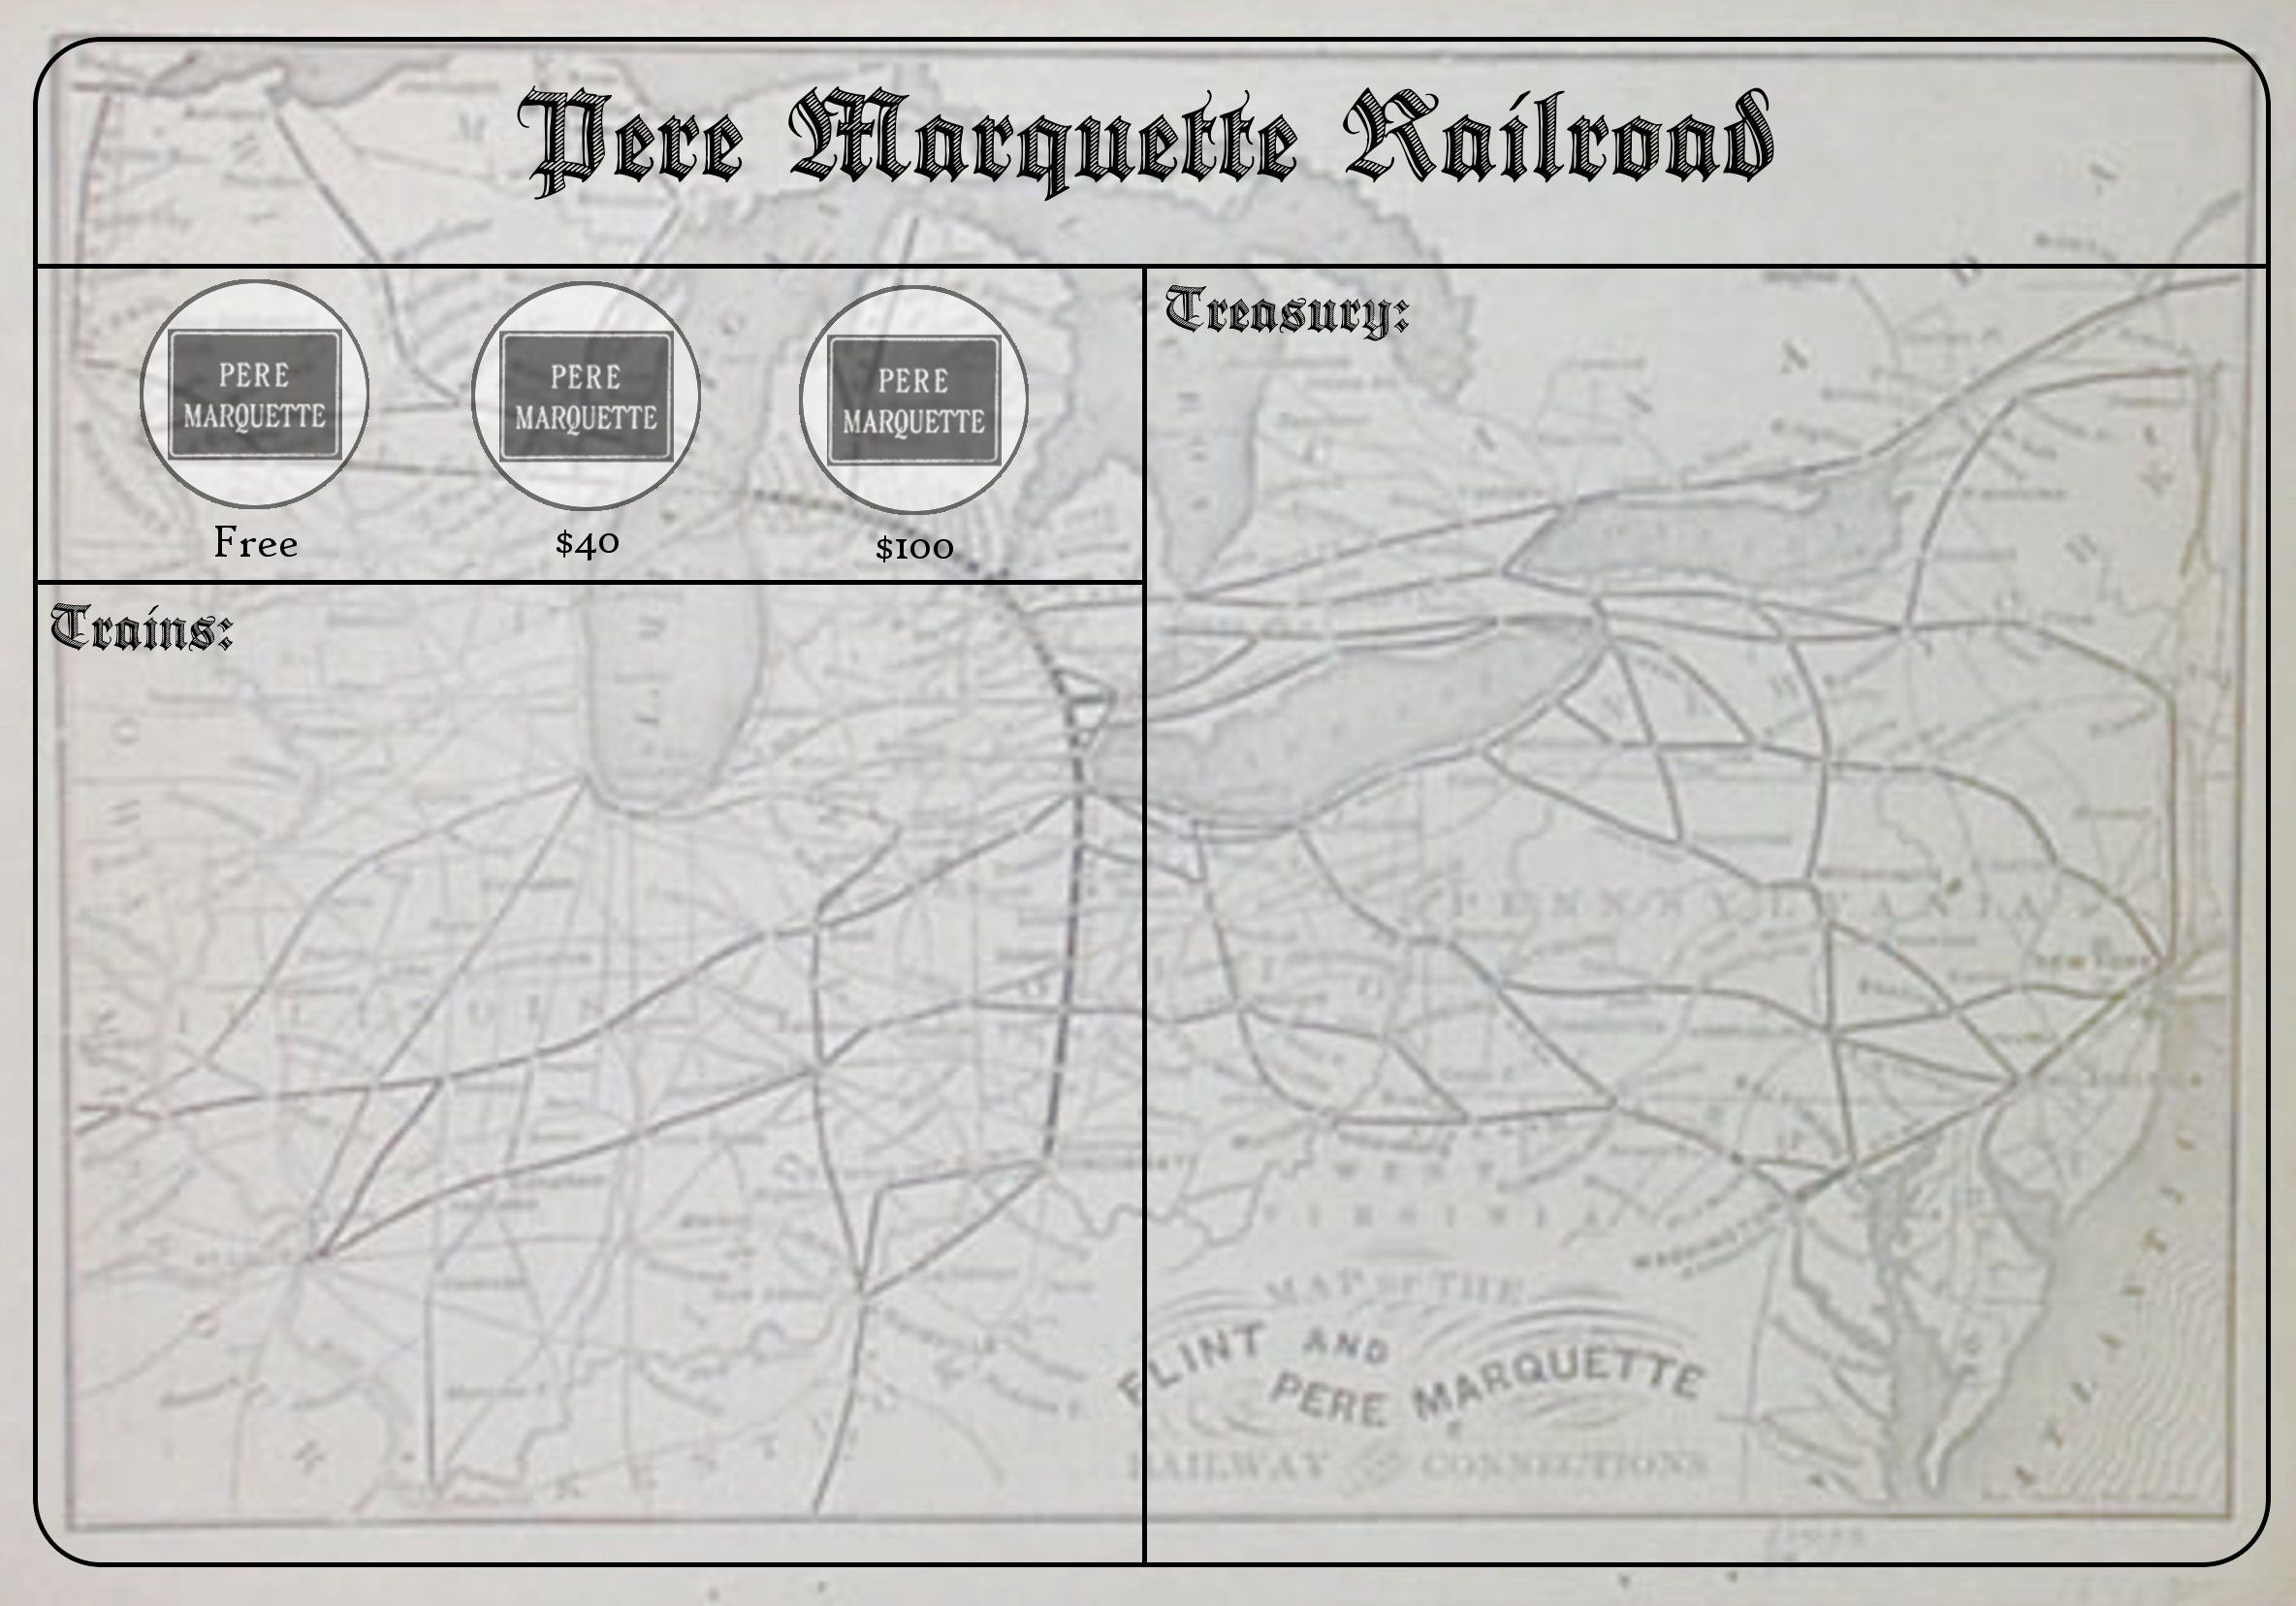 1830: The Pere Marquette